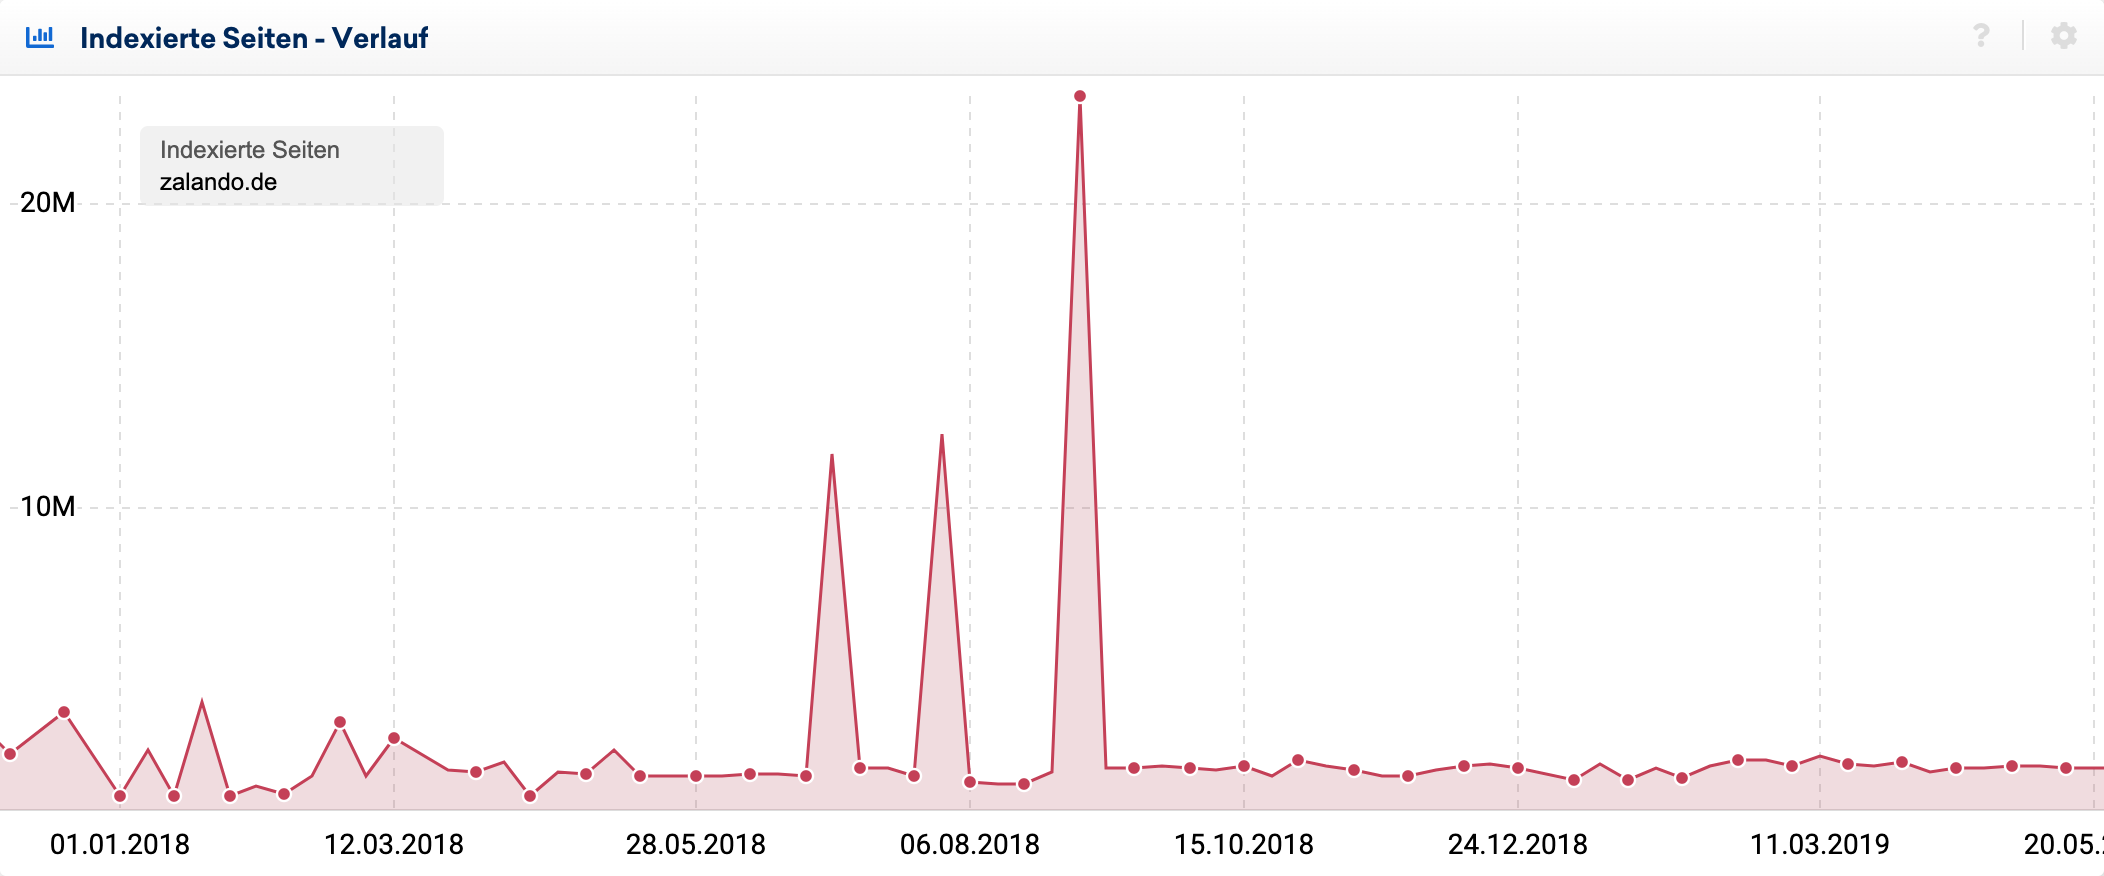 Verlauf der indexierten Seiten für zalando.de. Es zeigen sich Mitte 2018 massive Spikes in der Anzahl der indexierten Seiten laut Google.